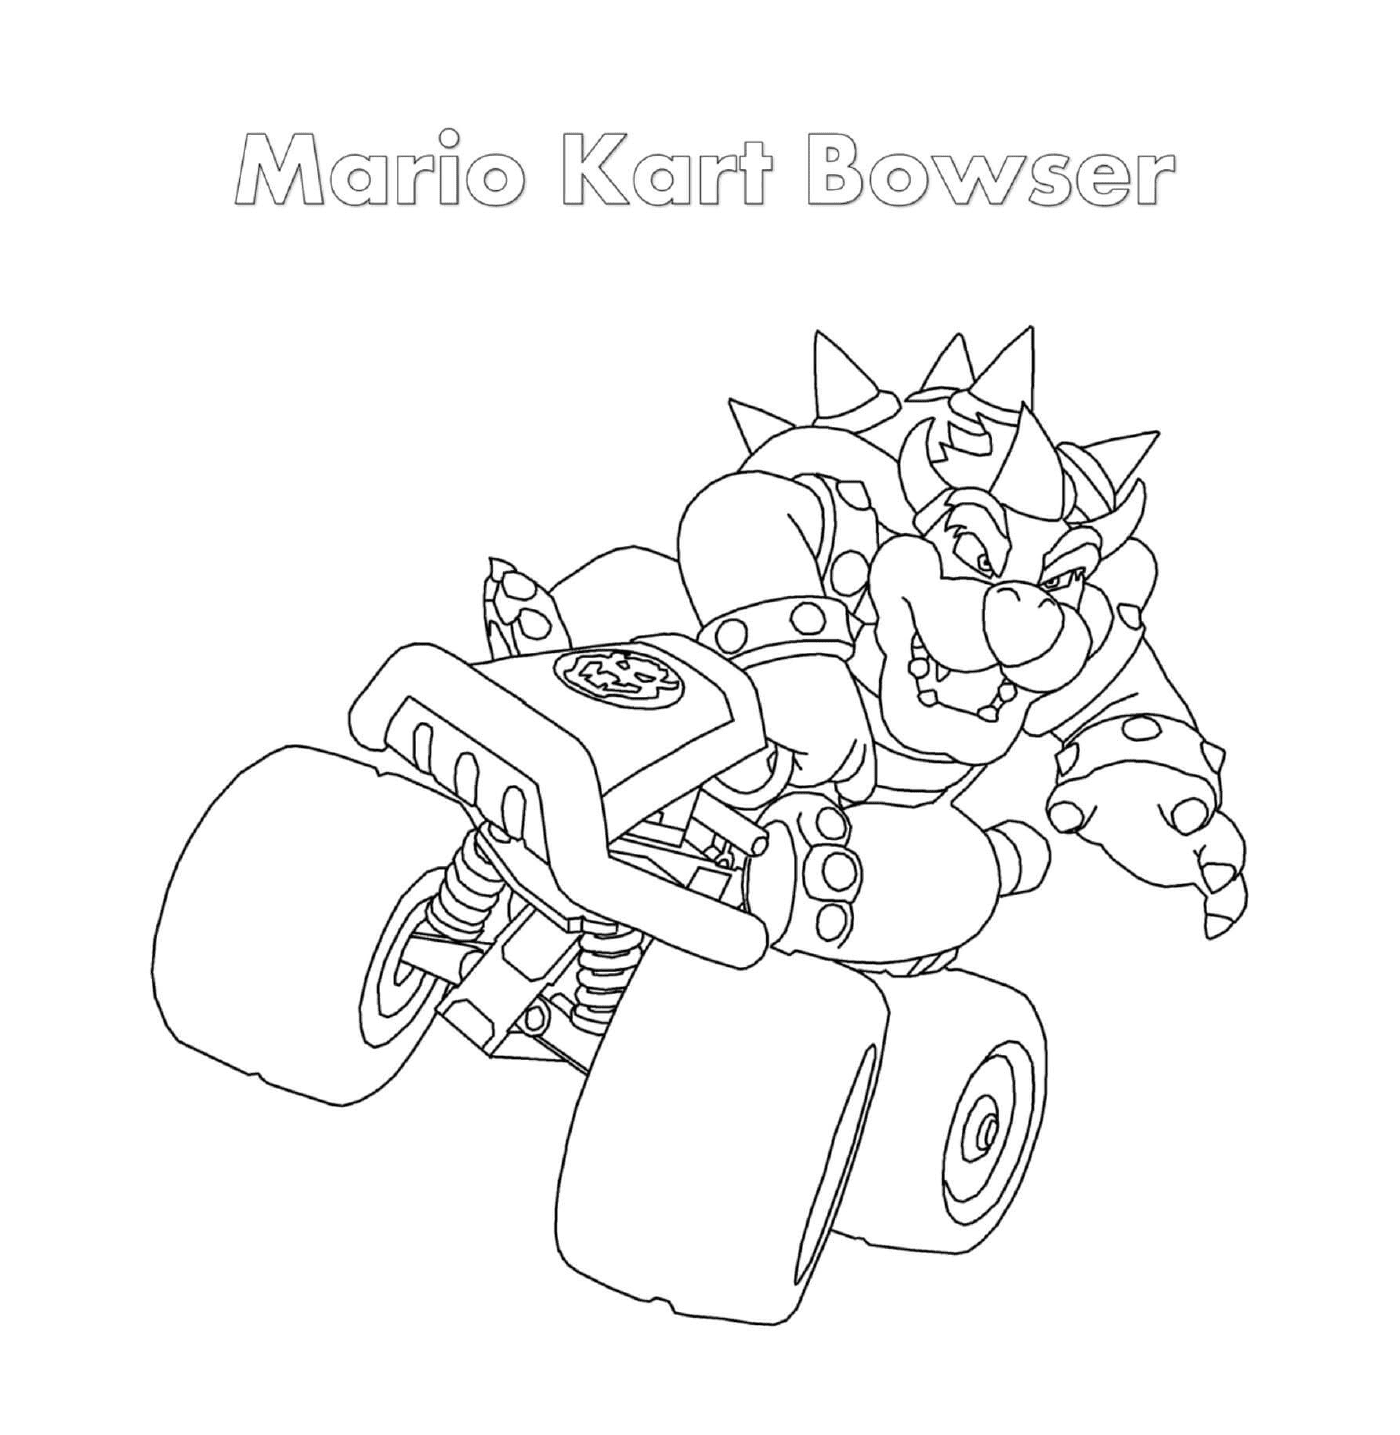 Bowser Mario Kart